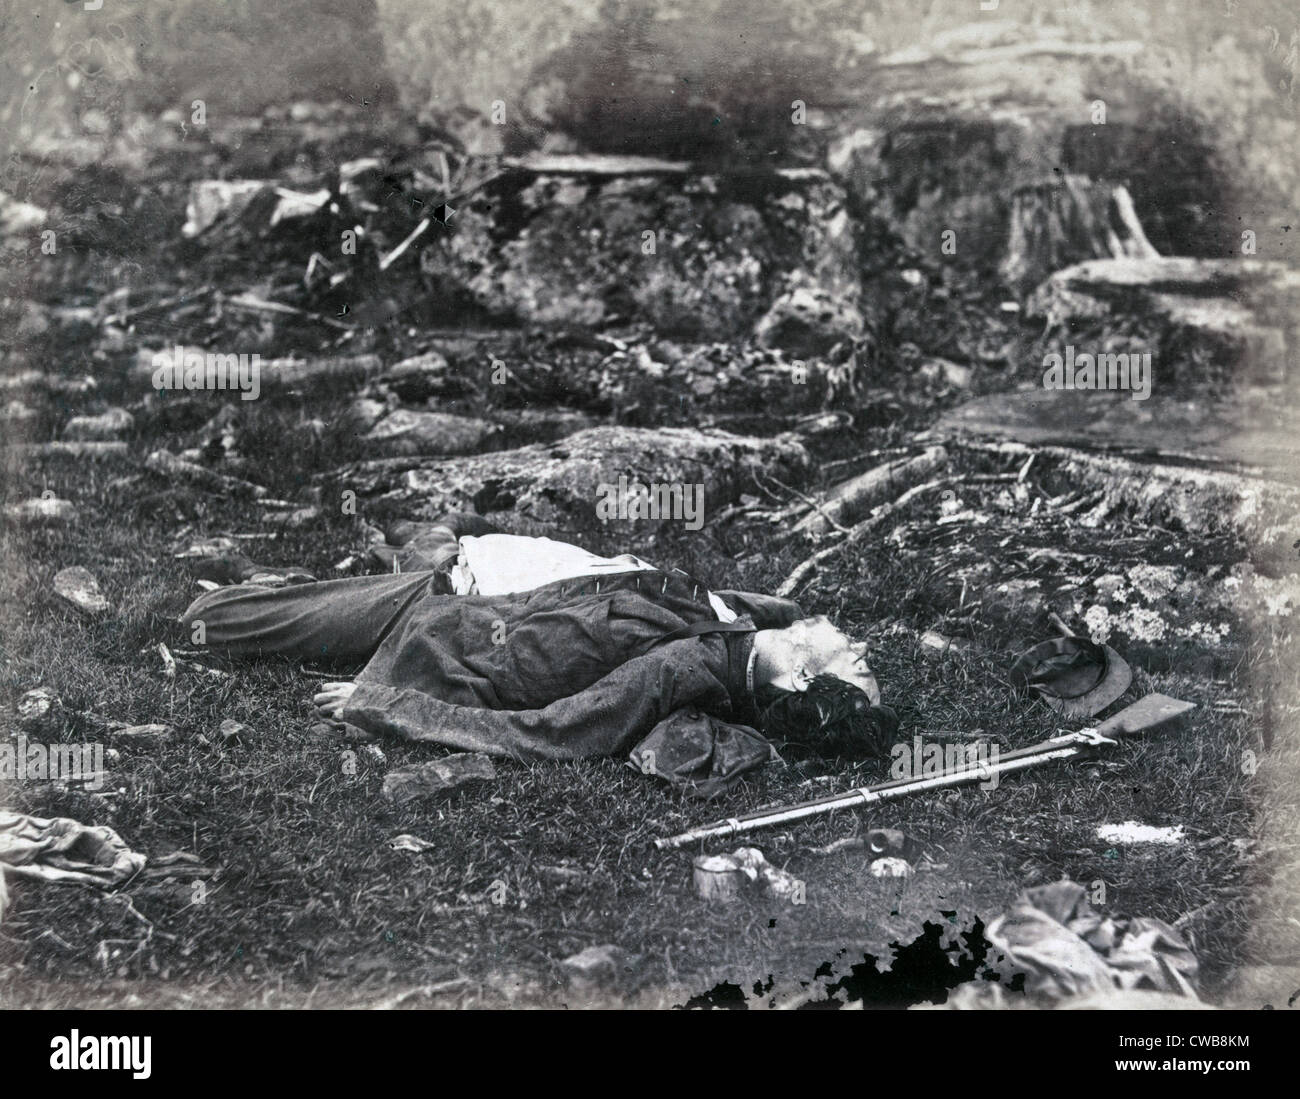 Der Bürgerkrieg. Die Schlacht von Gettysburg. Ein Scharfschütze letzten Schlaf, Gettysburg, Pennsylvania. Alex Gardner, Fotograf. Stockfoto